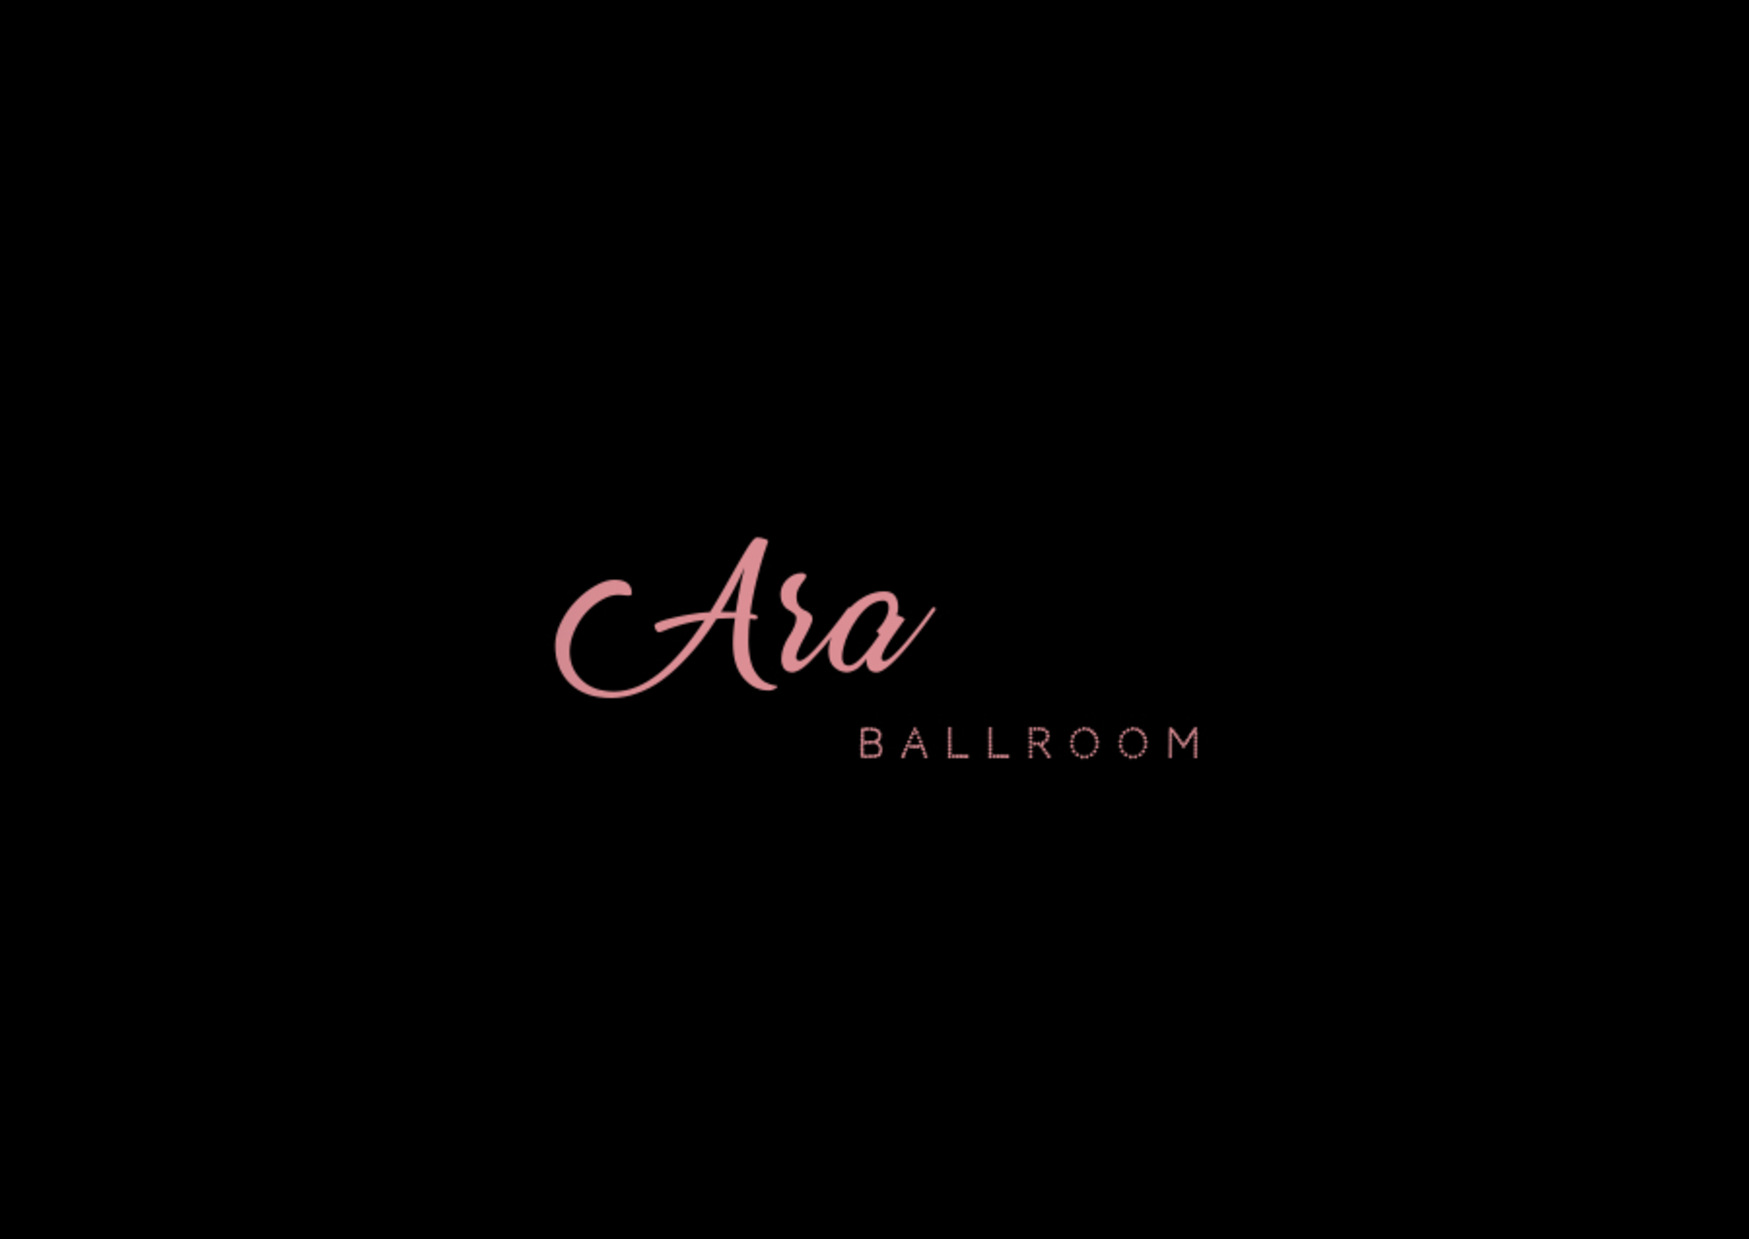 The Ara Resort & Spa Ballroom